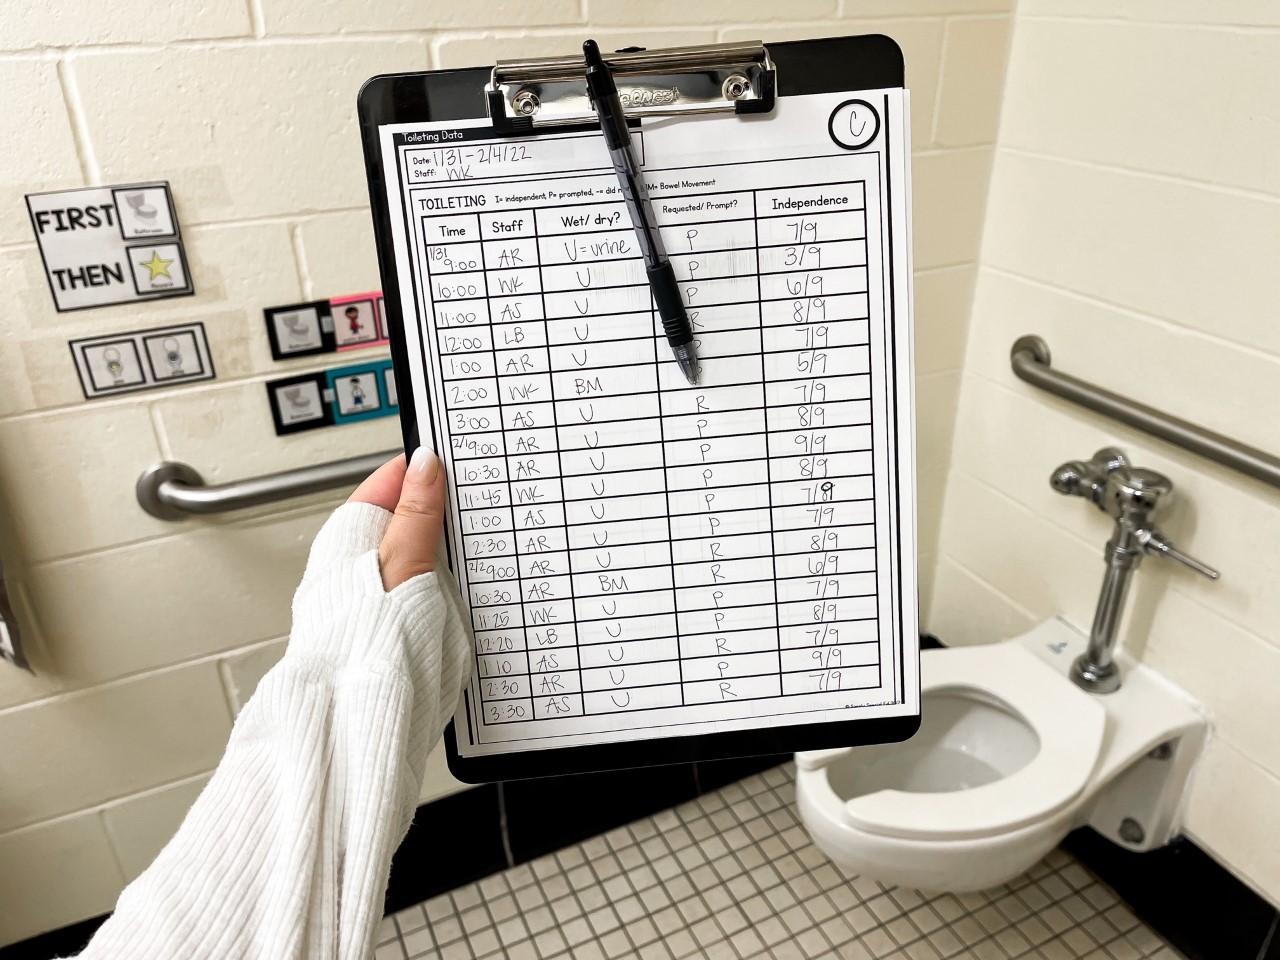 toileting data sheet